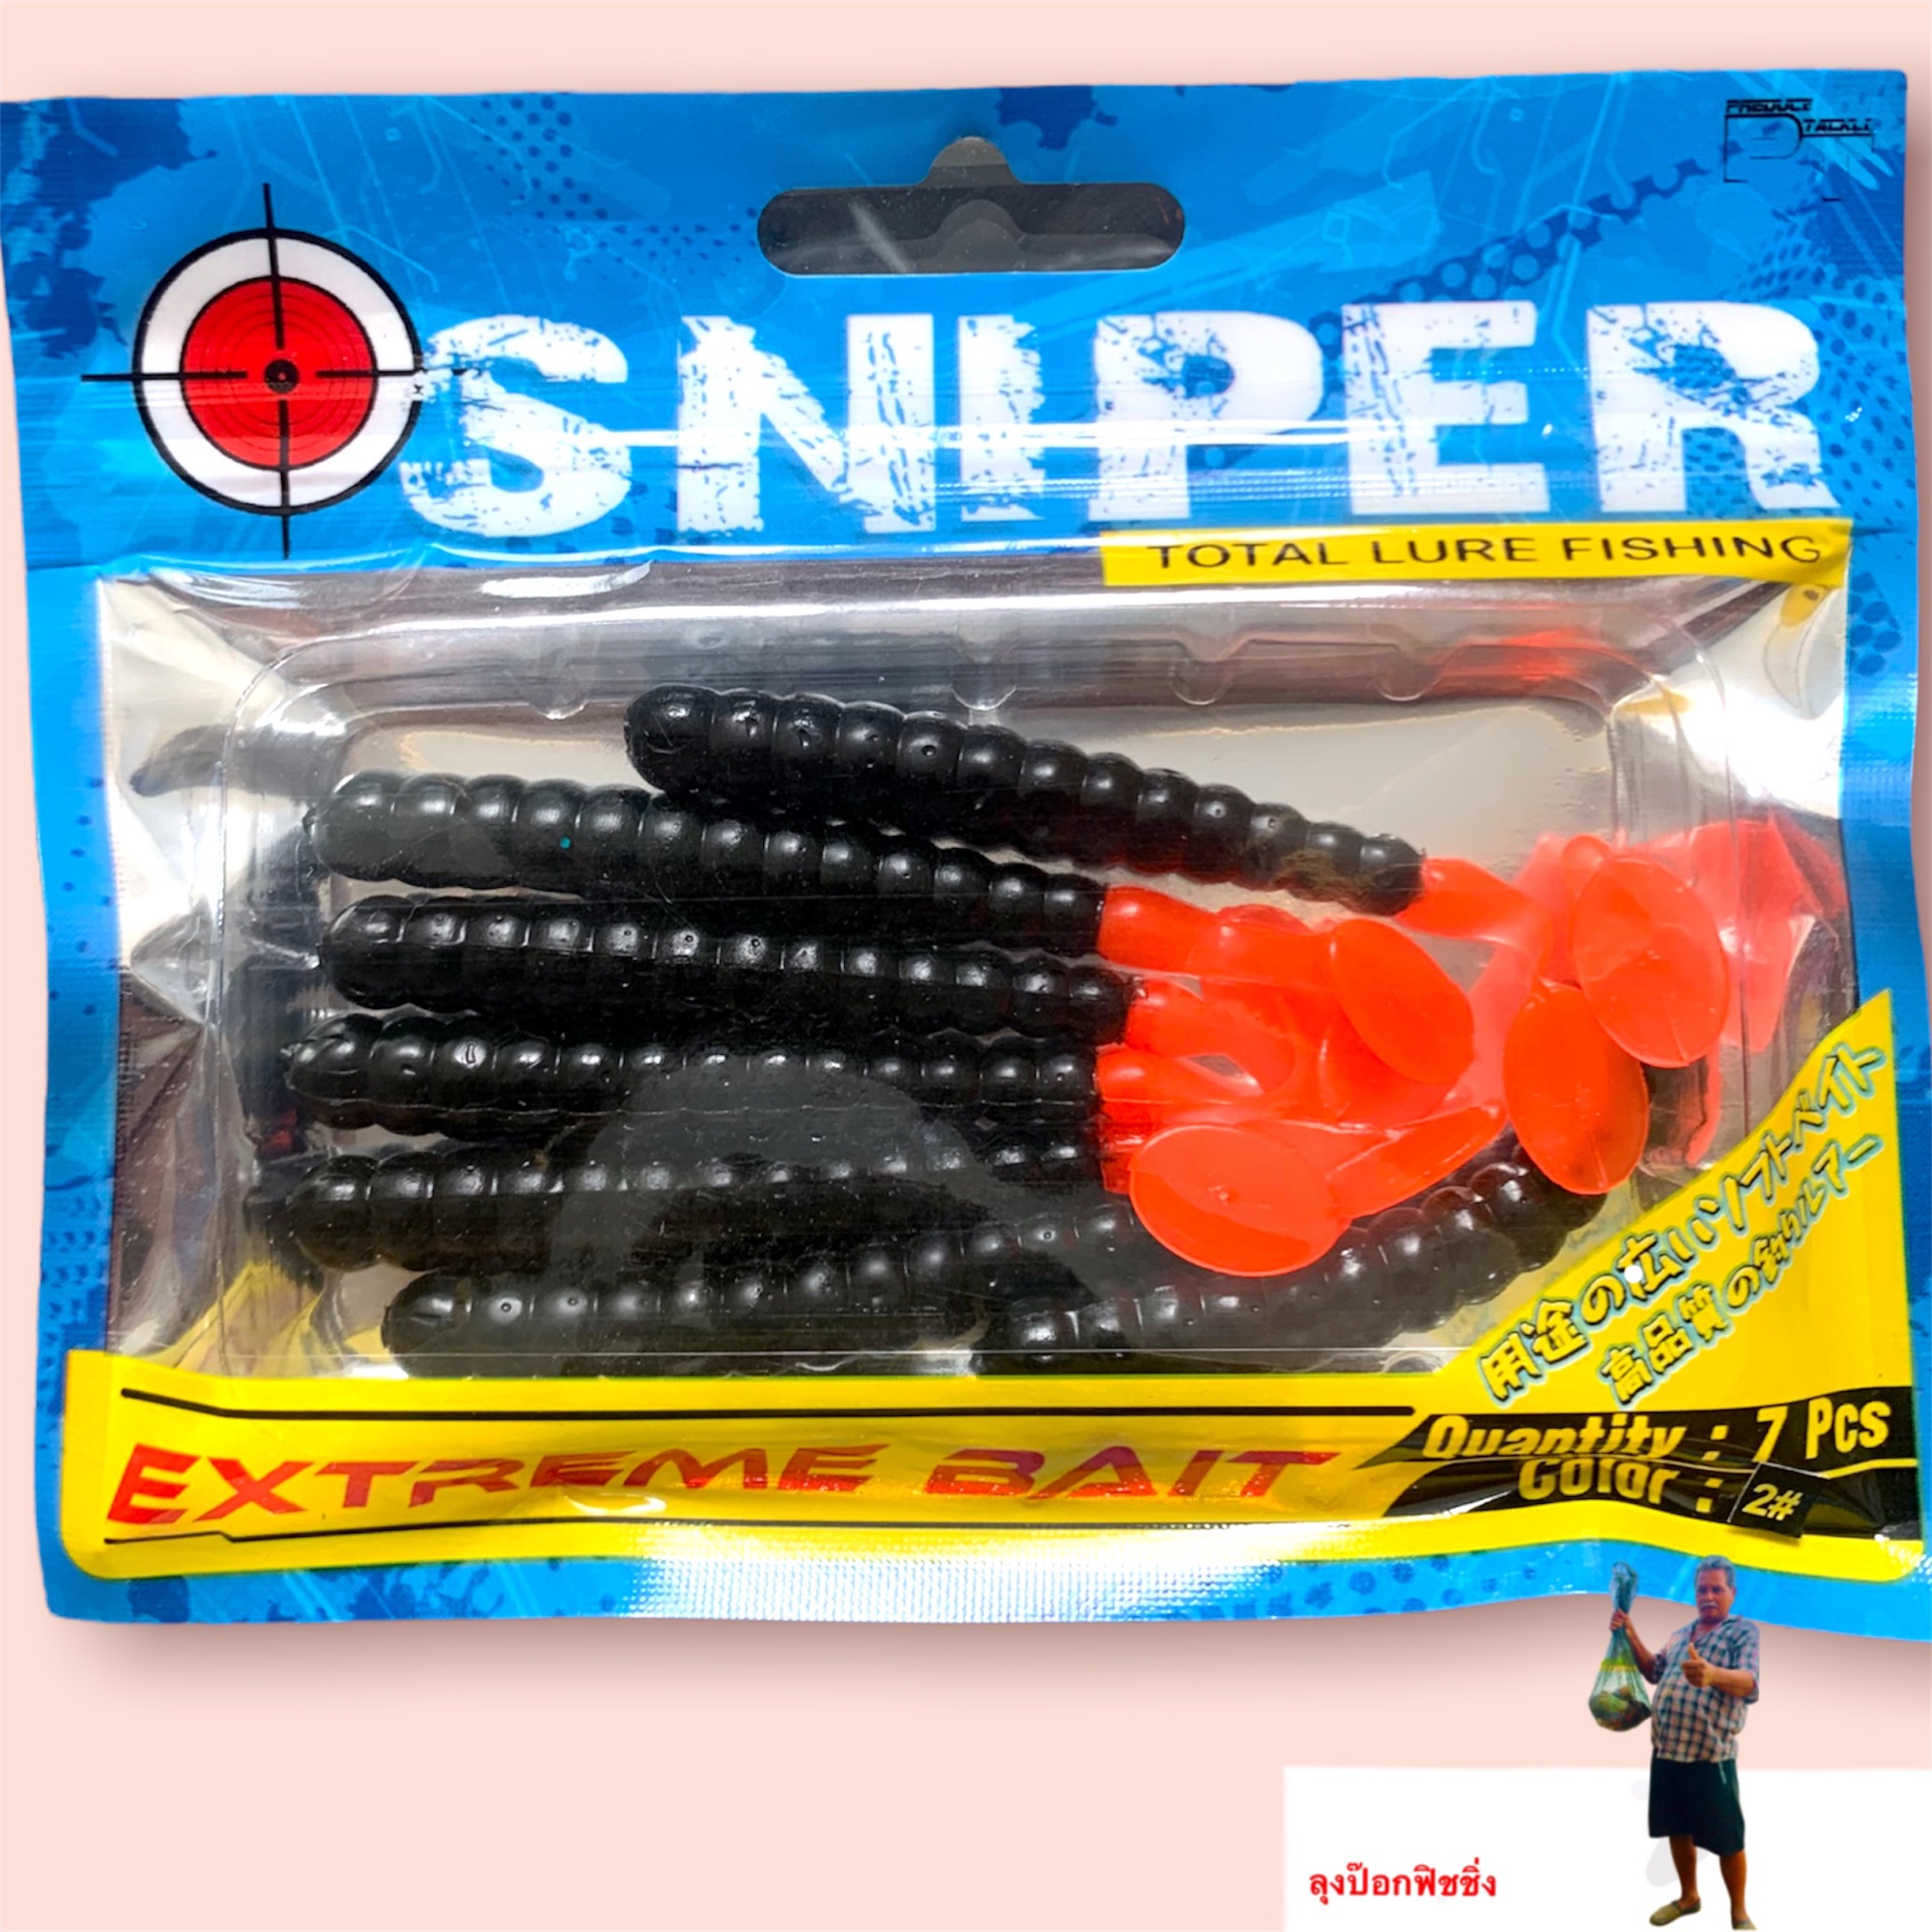 เหยื่อยาง Sniper ราคาถูก ซื้อออนไลน์ที่ - เม.ย. 2024